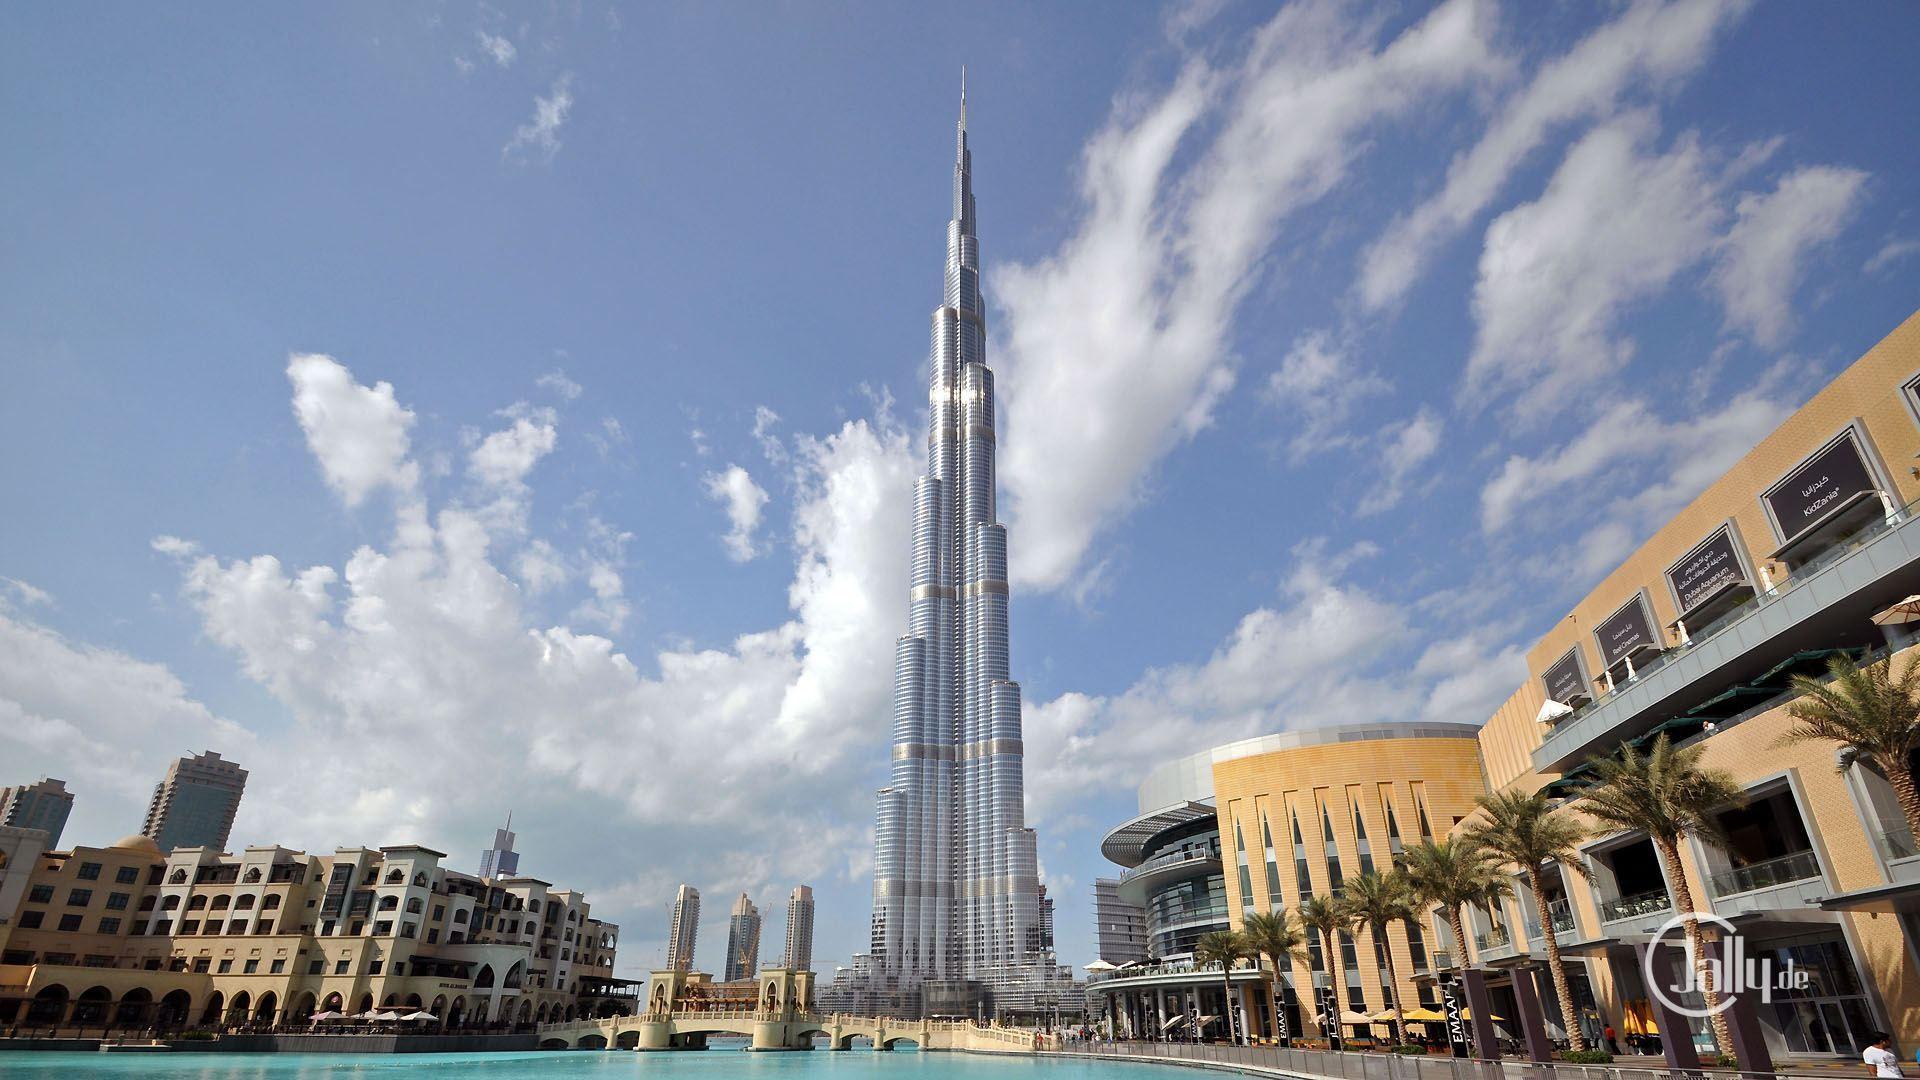 Burj Khalifa HD Wallpaper Free Download. New HD Wallpaper Download